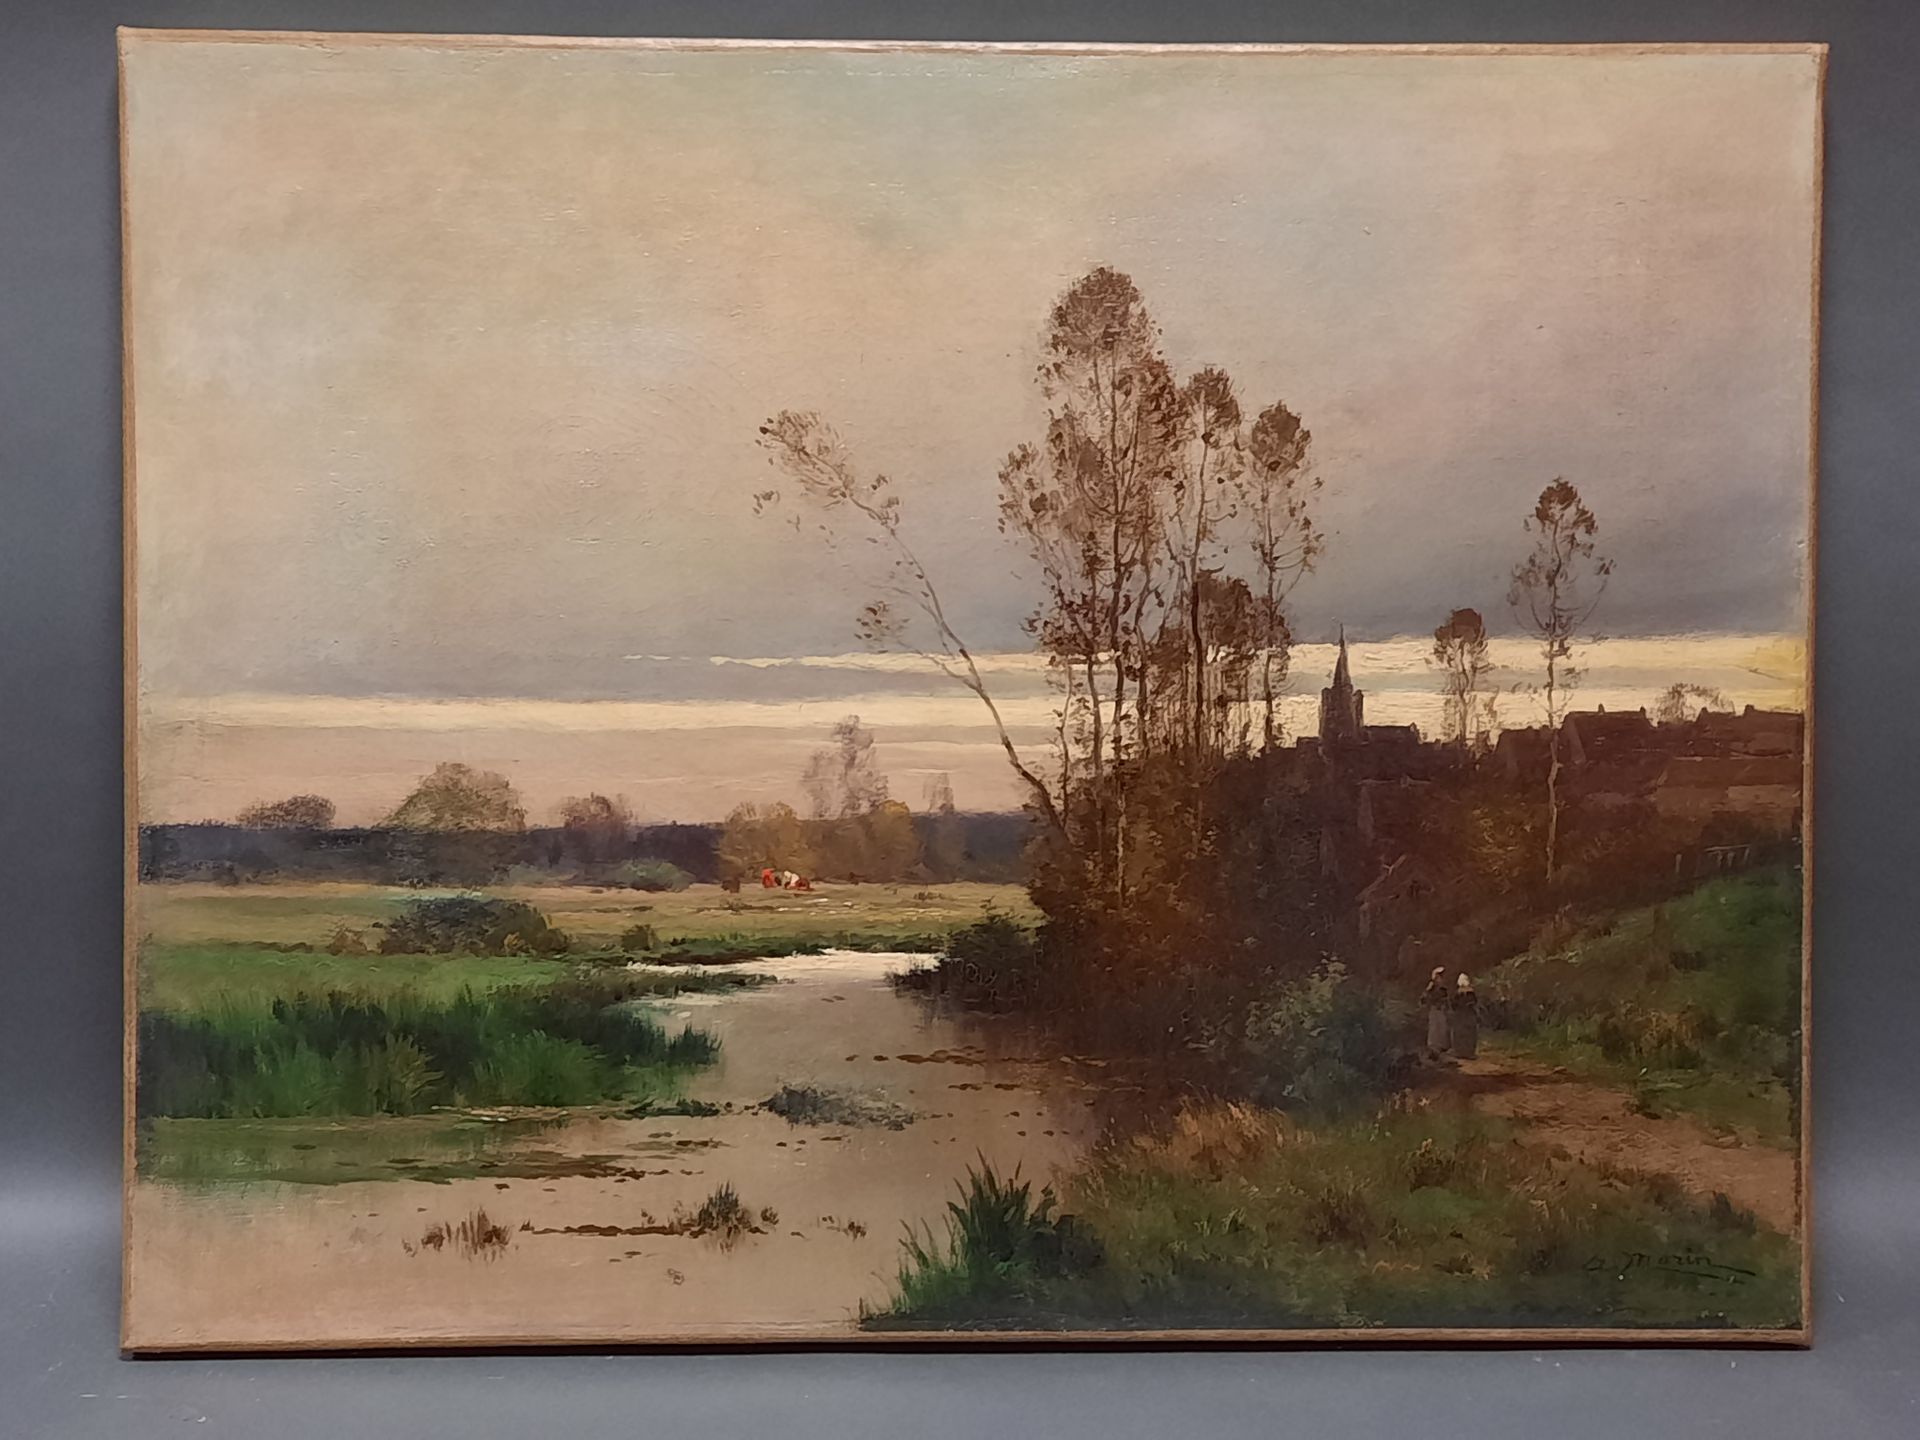 Null Adolphe MORIN (1841-circa 1880)

Villaggio vicino al fiume

Olio su tela fi&hellip;